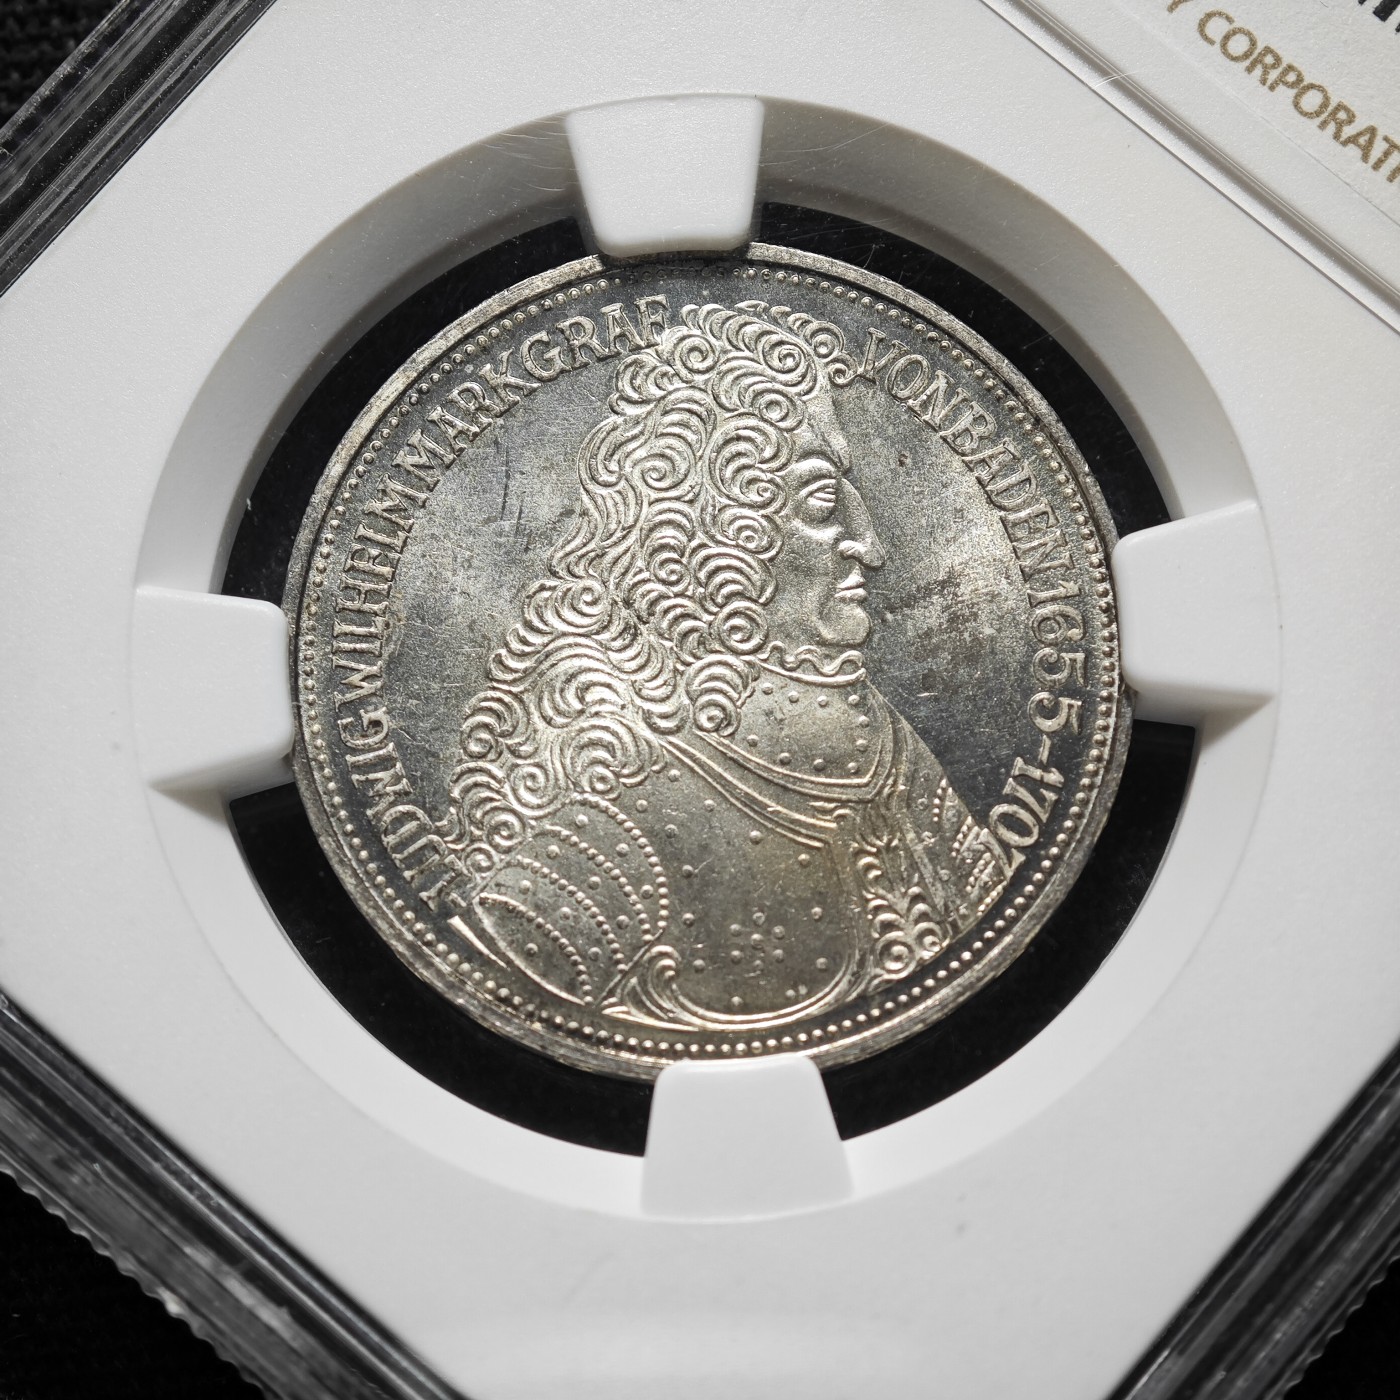 1955年 联邦德国巴登路德维希5马克银币 NGC MS64 联邦德国马克五大天王之一